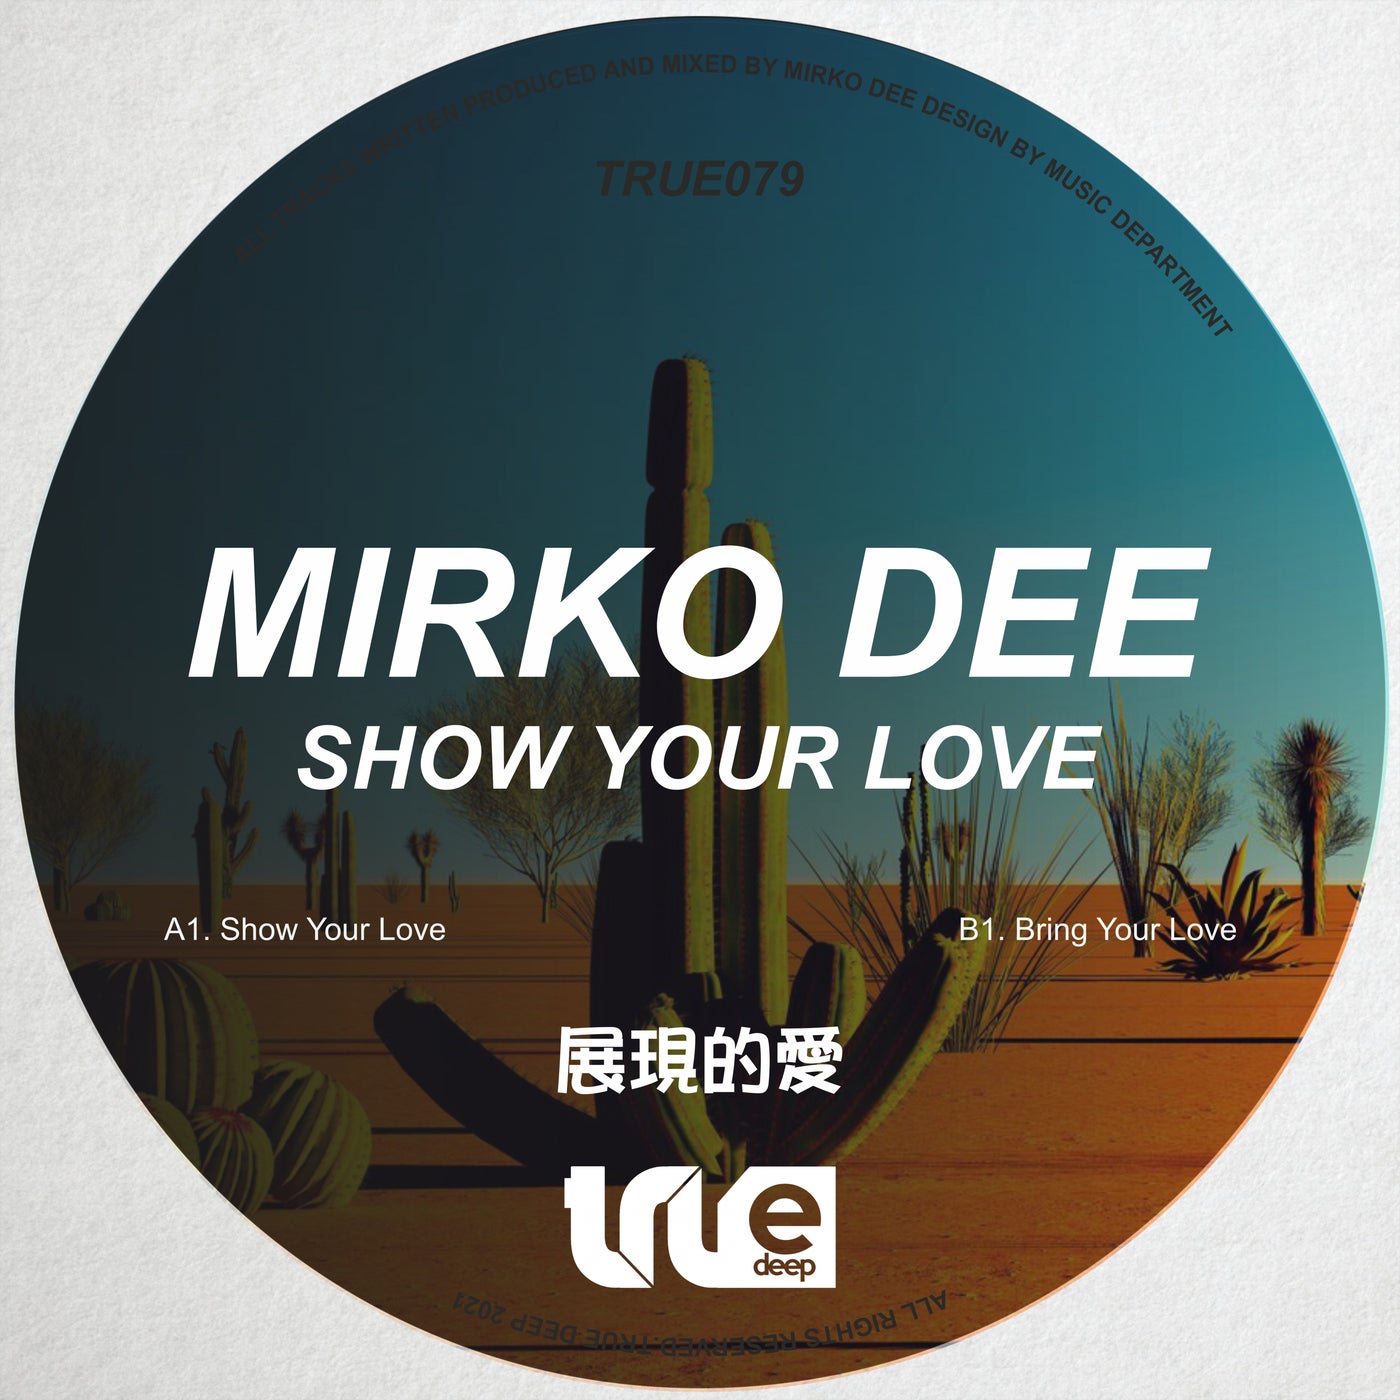 Mirko Dee - Show Your Love [TRUE079]